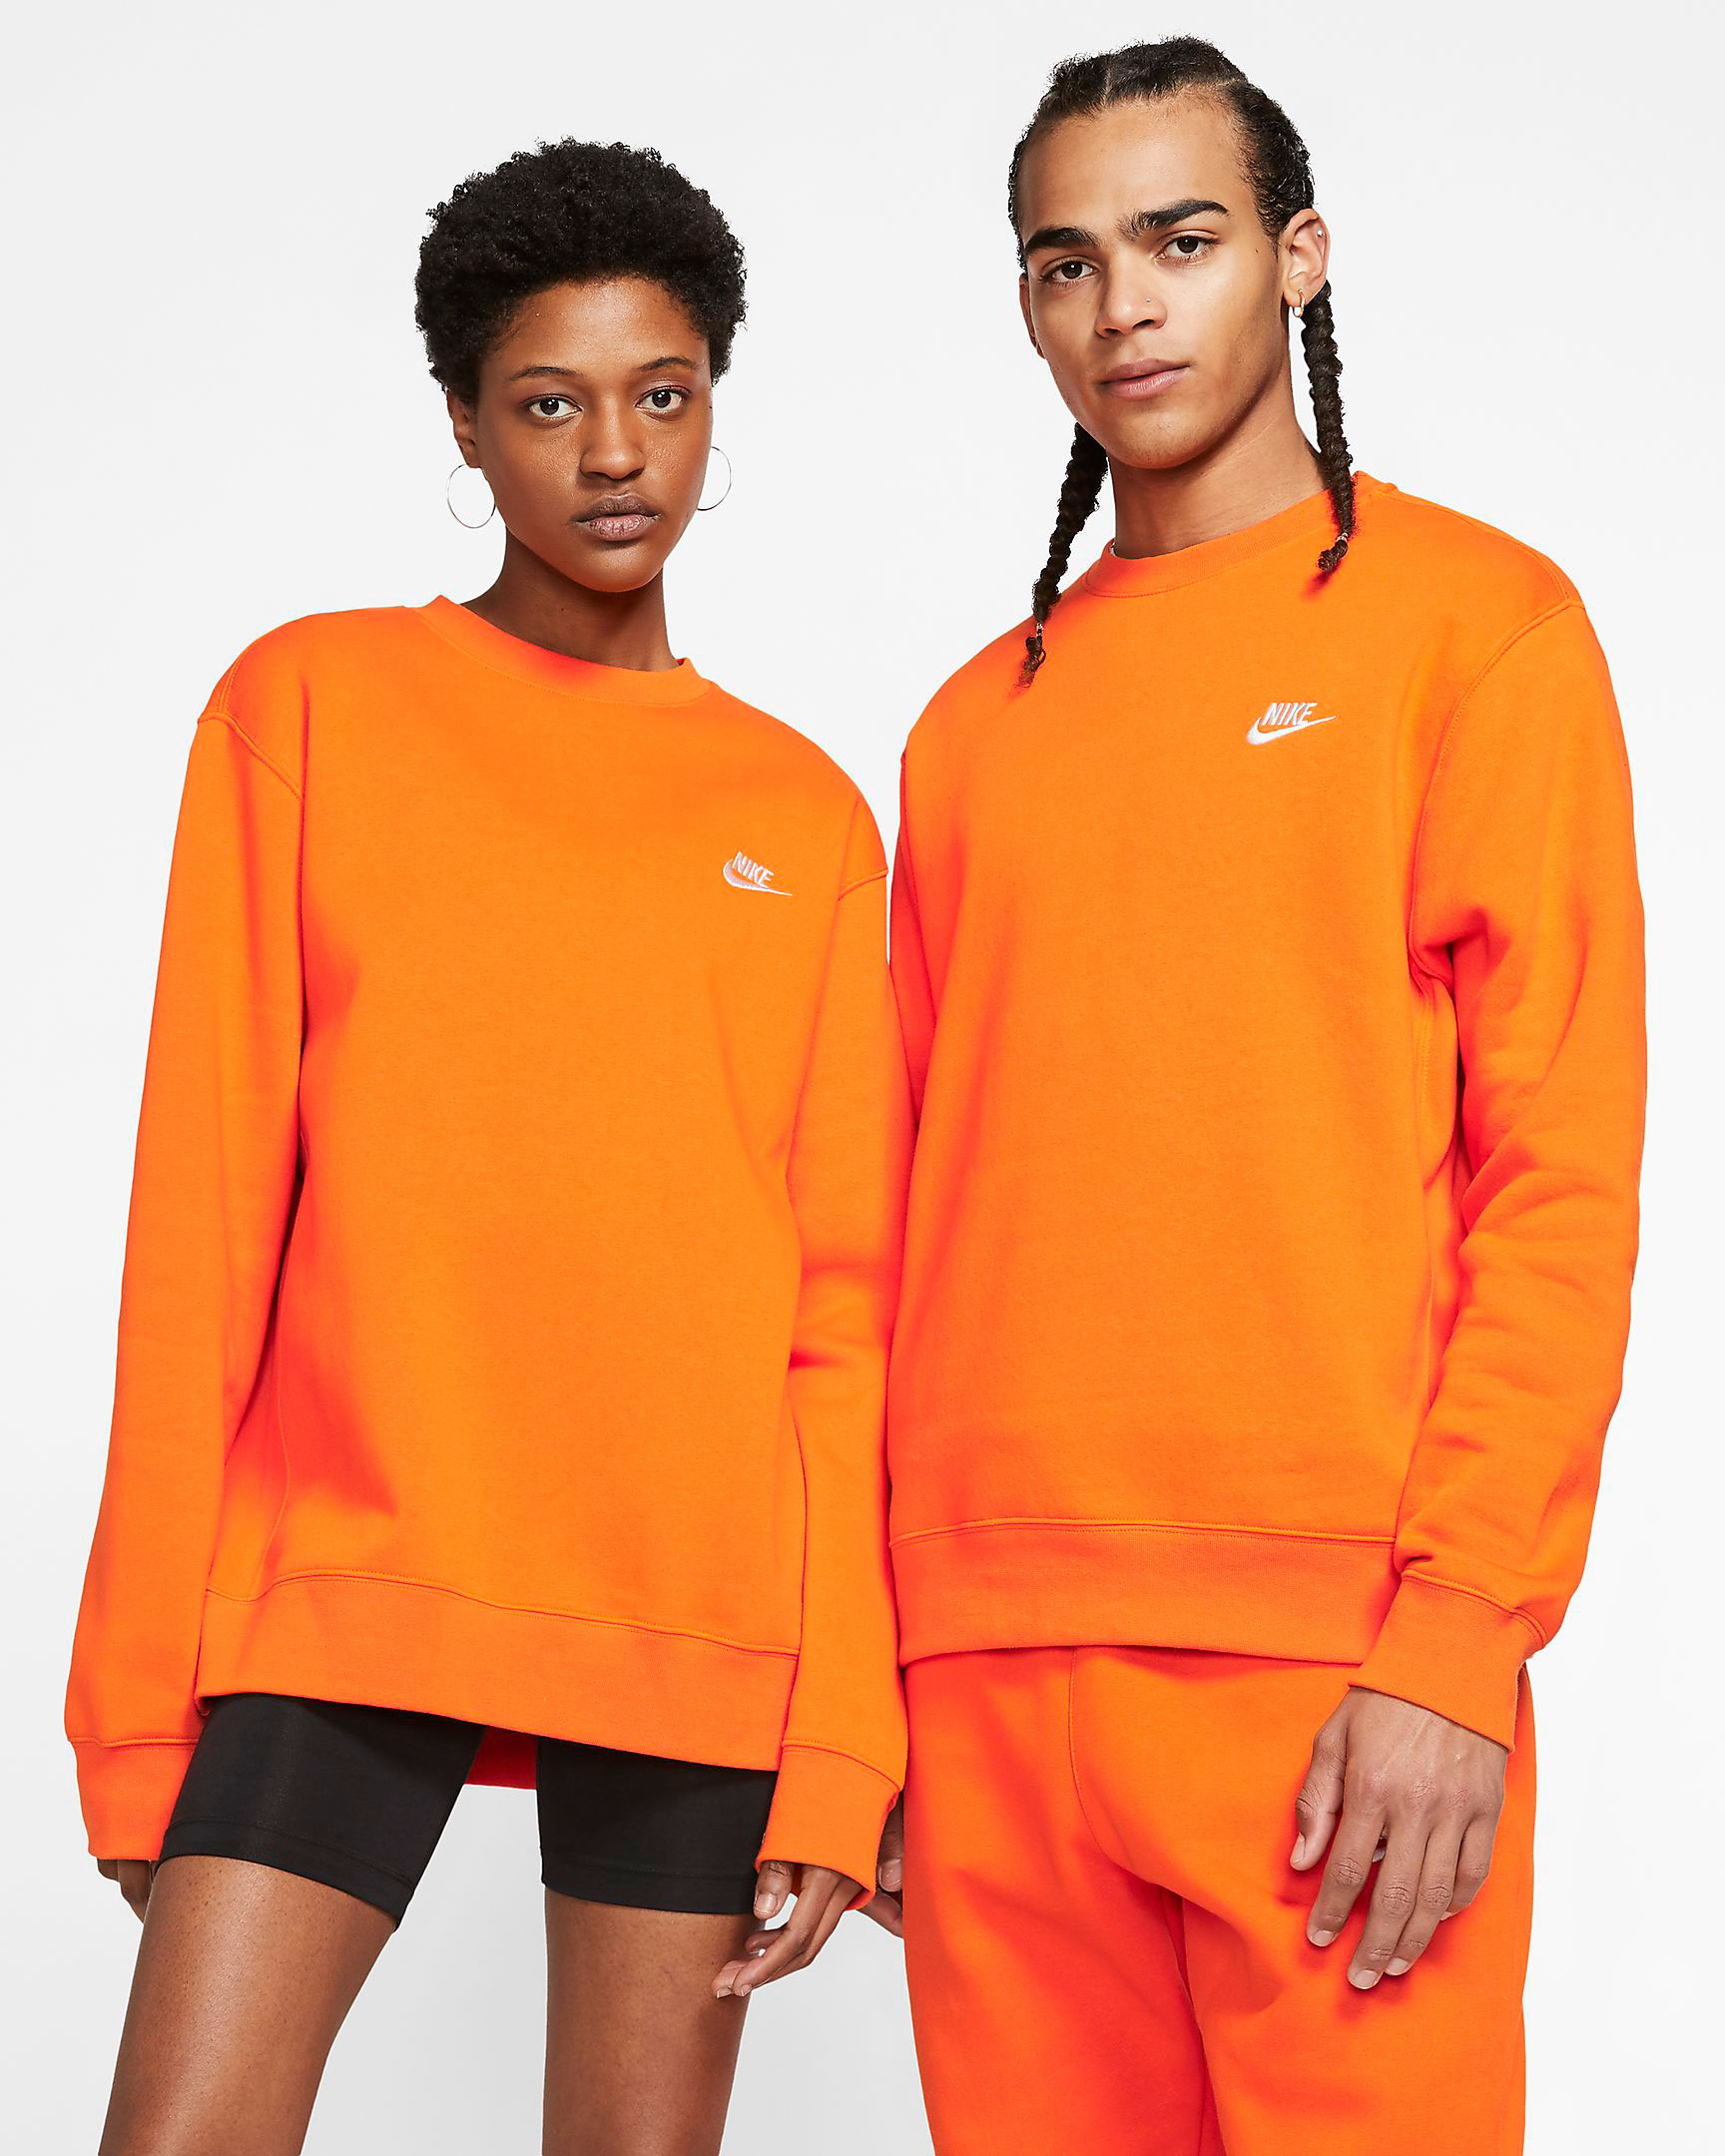 nike-sportswear-orange-crew-sweatshirt